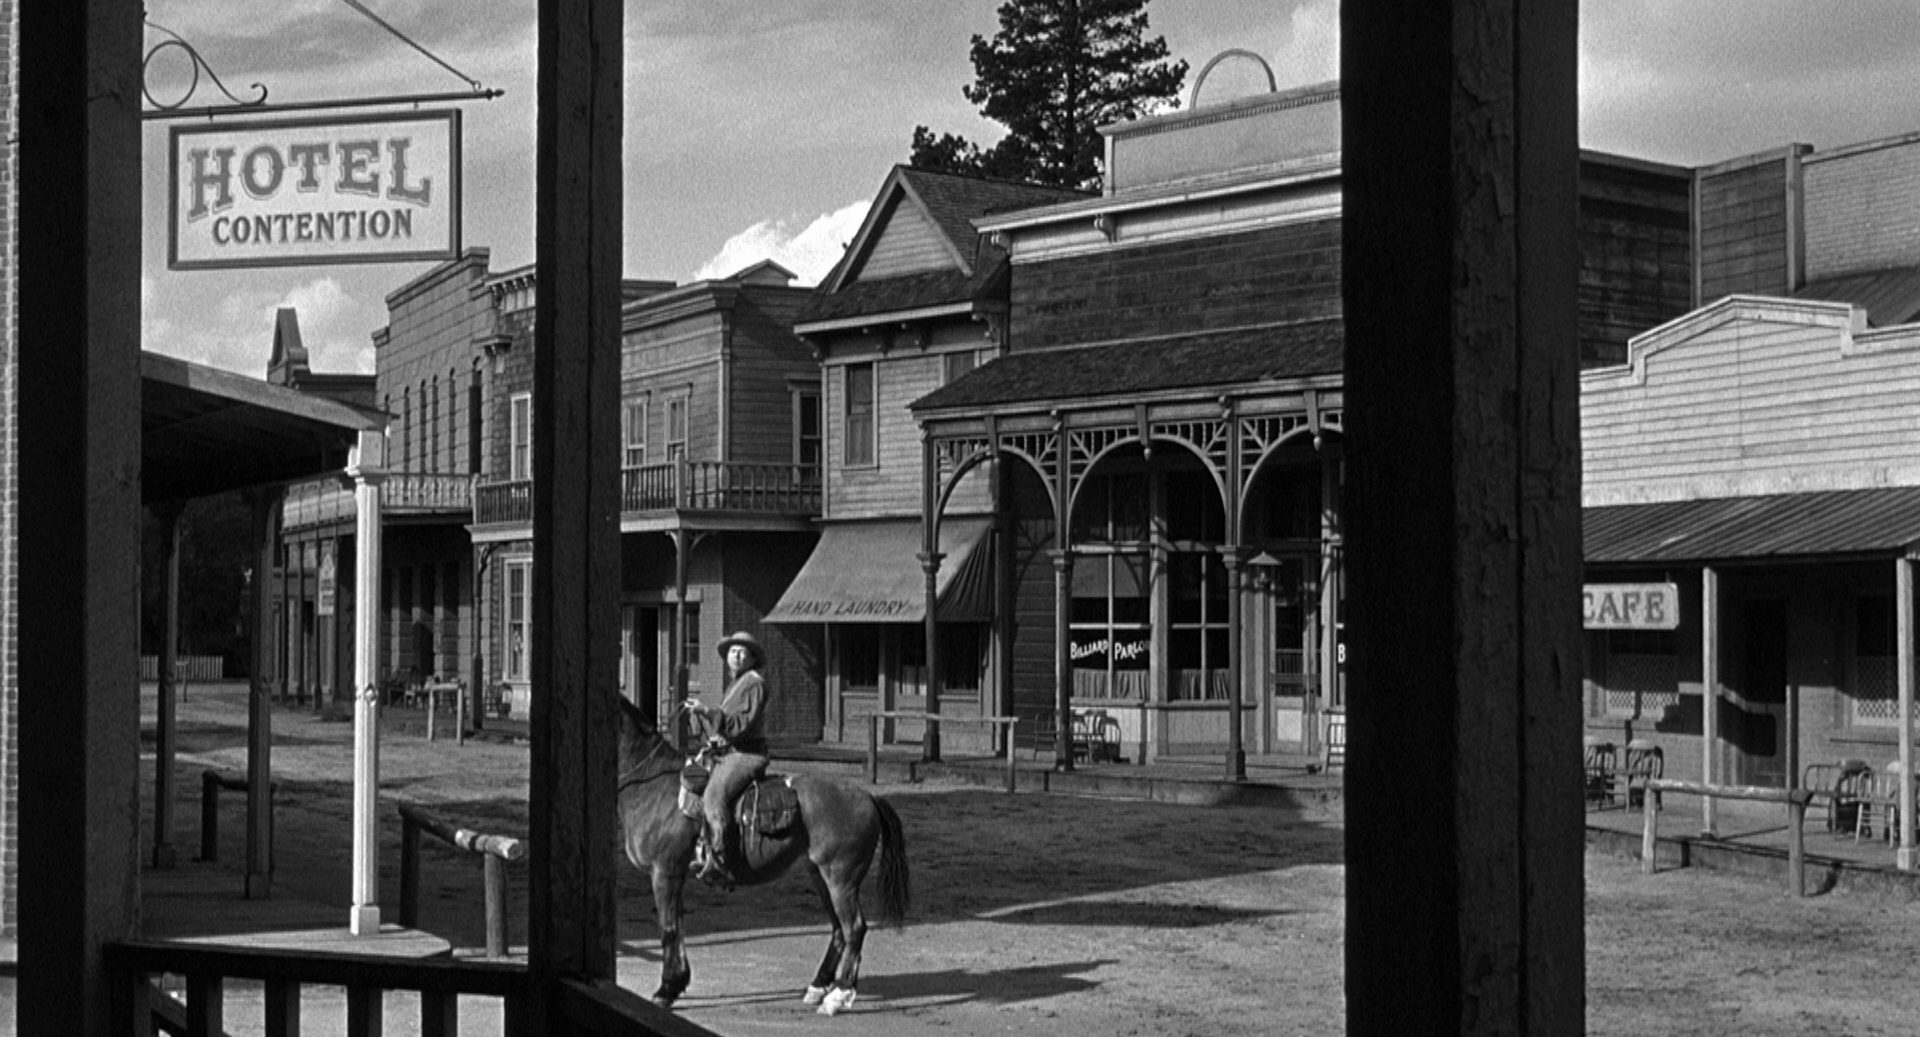 Mann zu Pferd alleine auf der Hauptstraße einer menschenleeren Kleinstadt; im Vordergrund ein Schlild mit der Aufschrift: Hotel Contention.